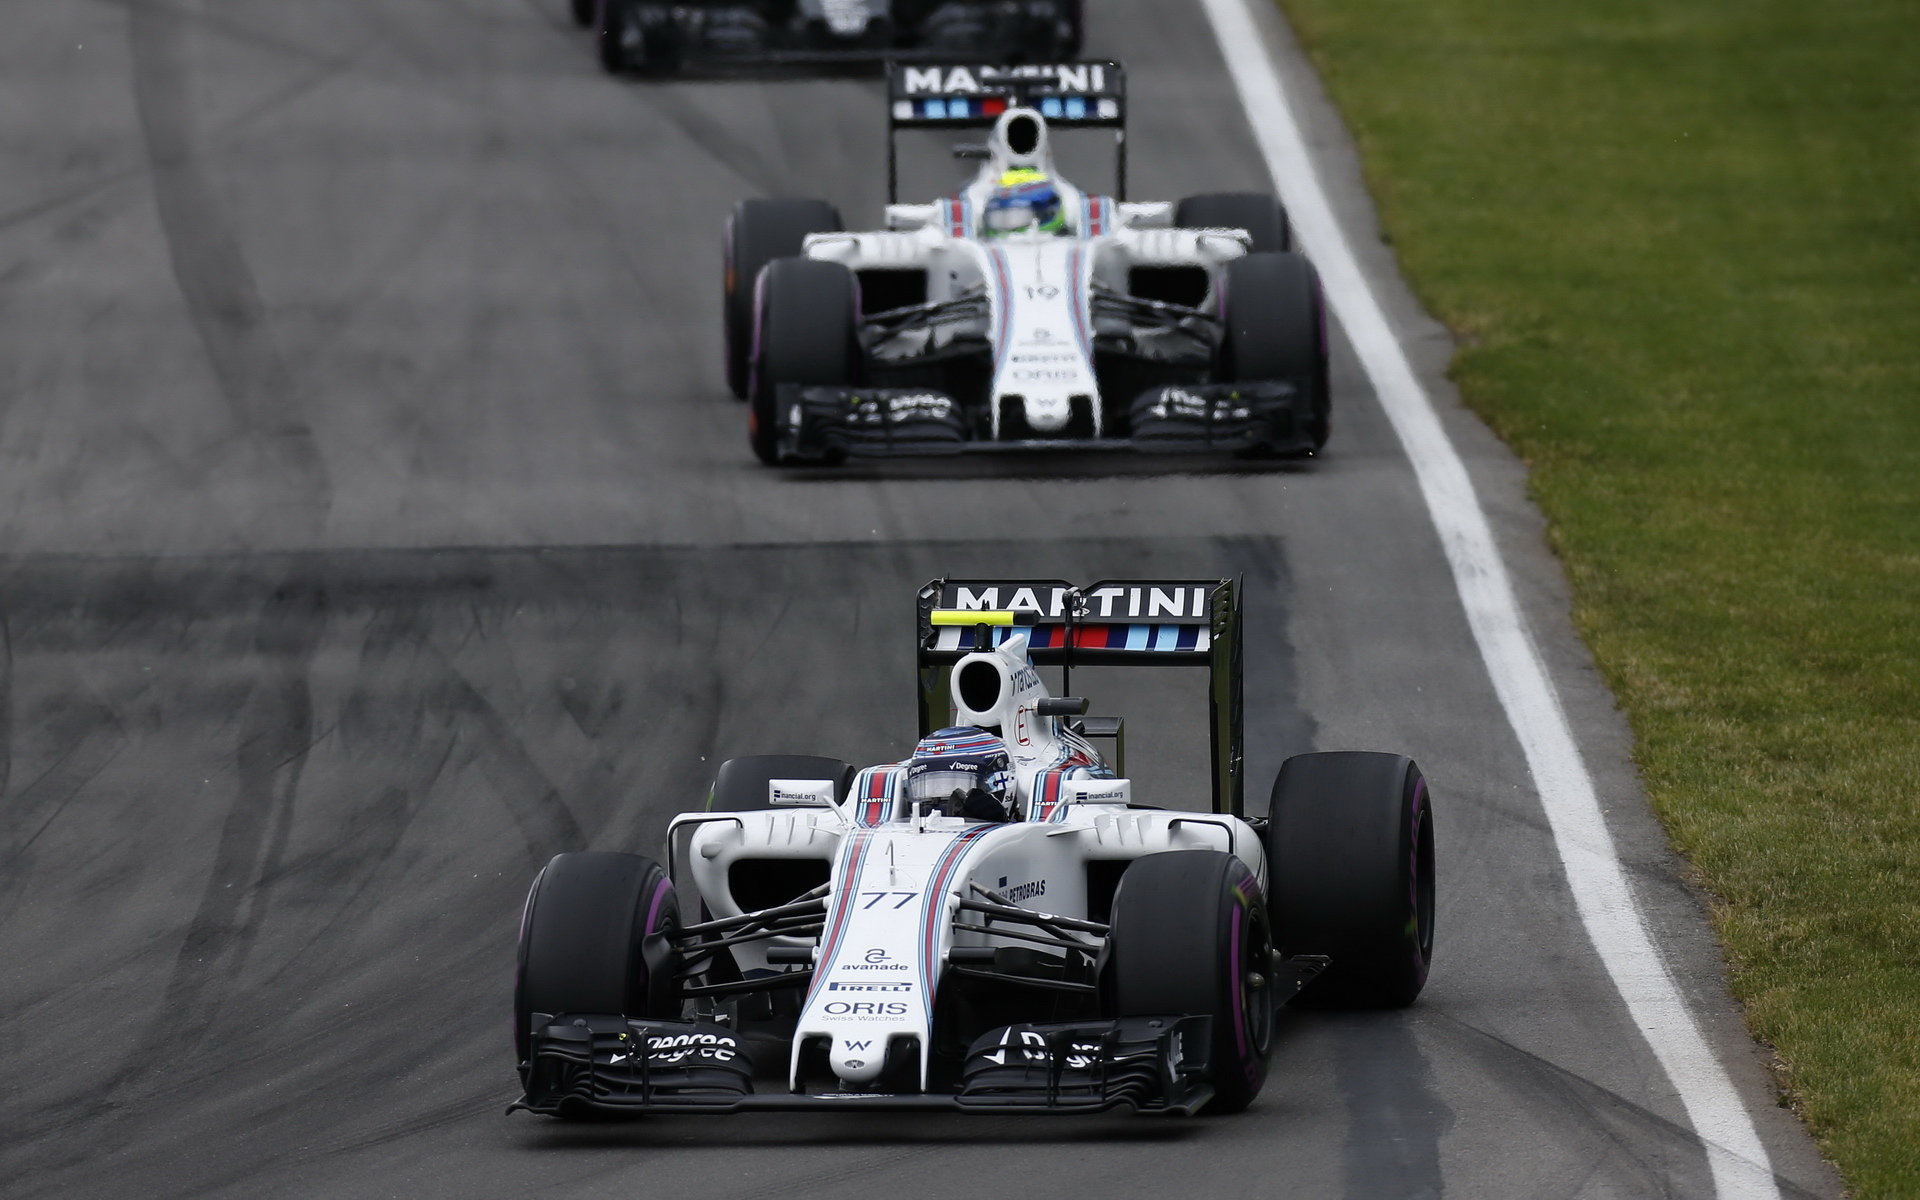 Valtteri Bottas a Felipe Massa v závodě v Kanadě